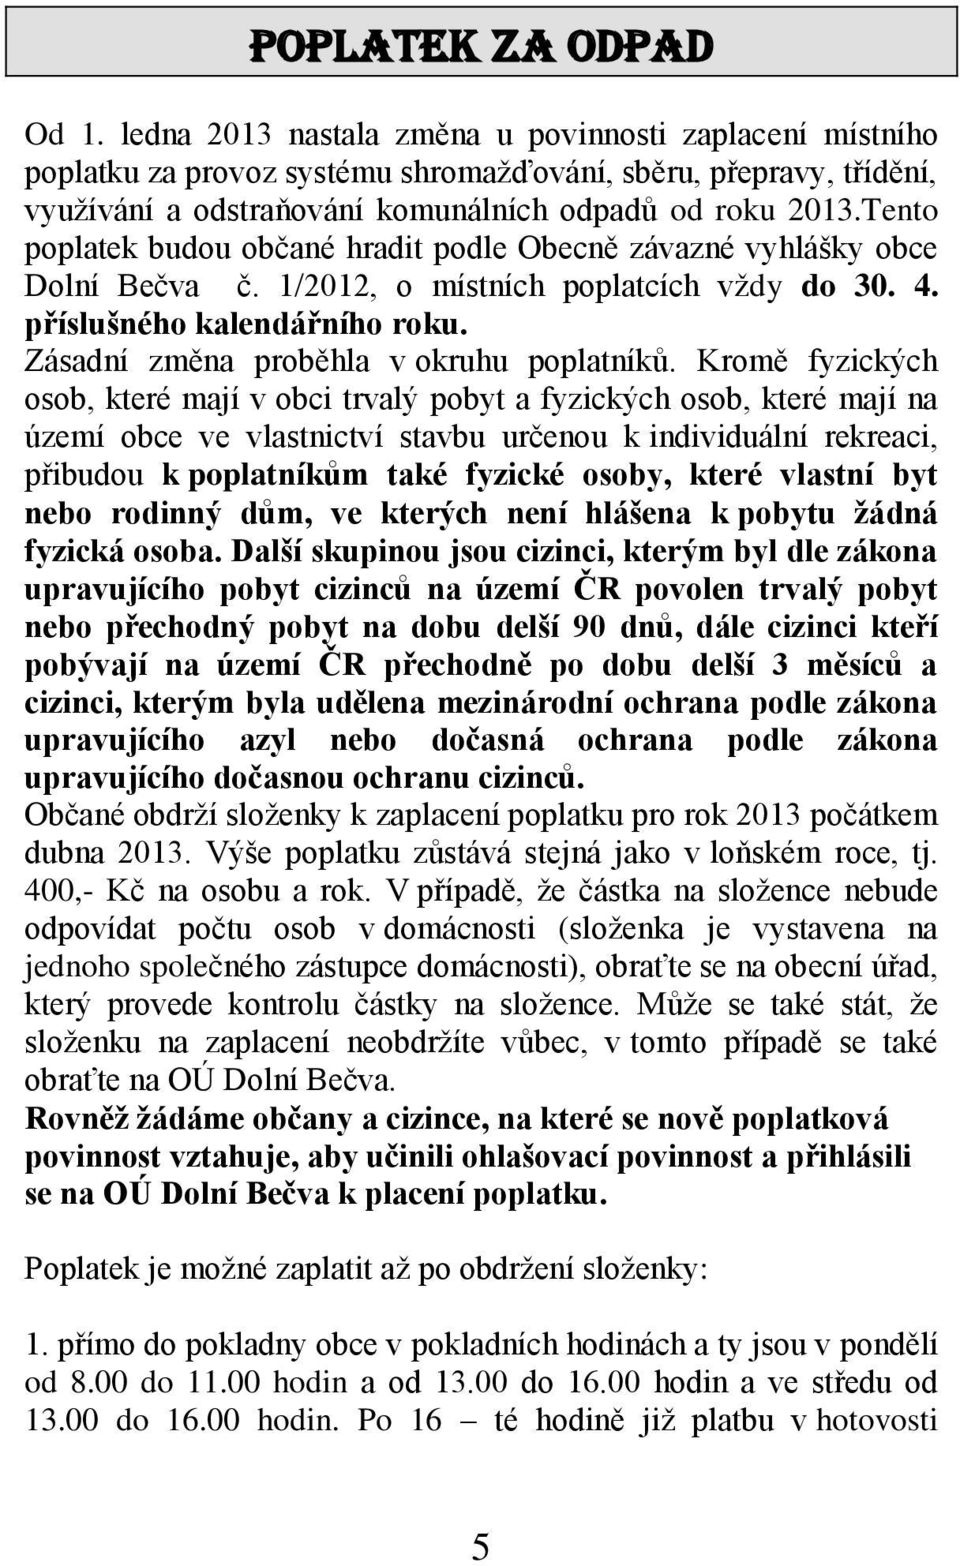 Tento poplatek budou občané hradit podle Obecně závazné vyhlášky obce Dolní Bečva č. 1/2012, o místních poplatcích vždy do 30. 4. příslušného kalendářního roku.